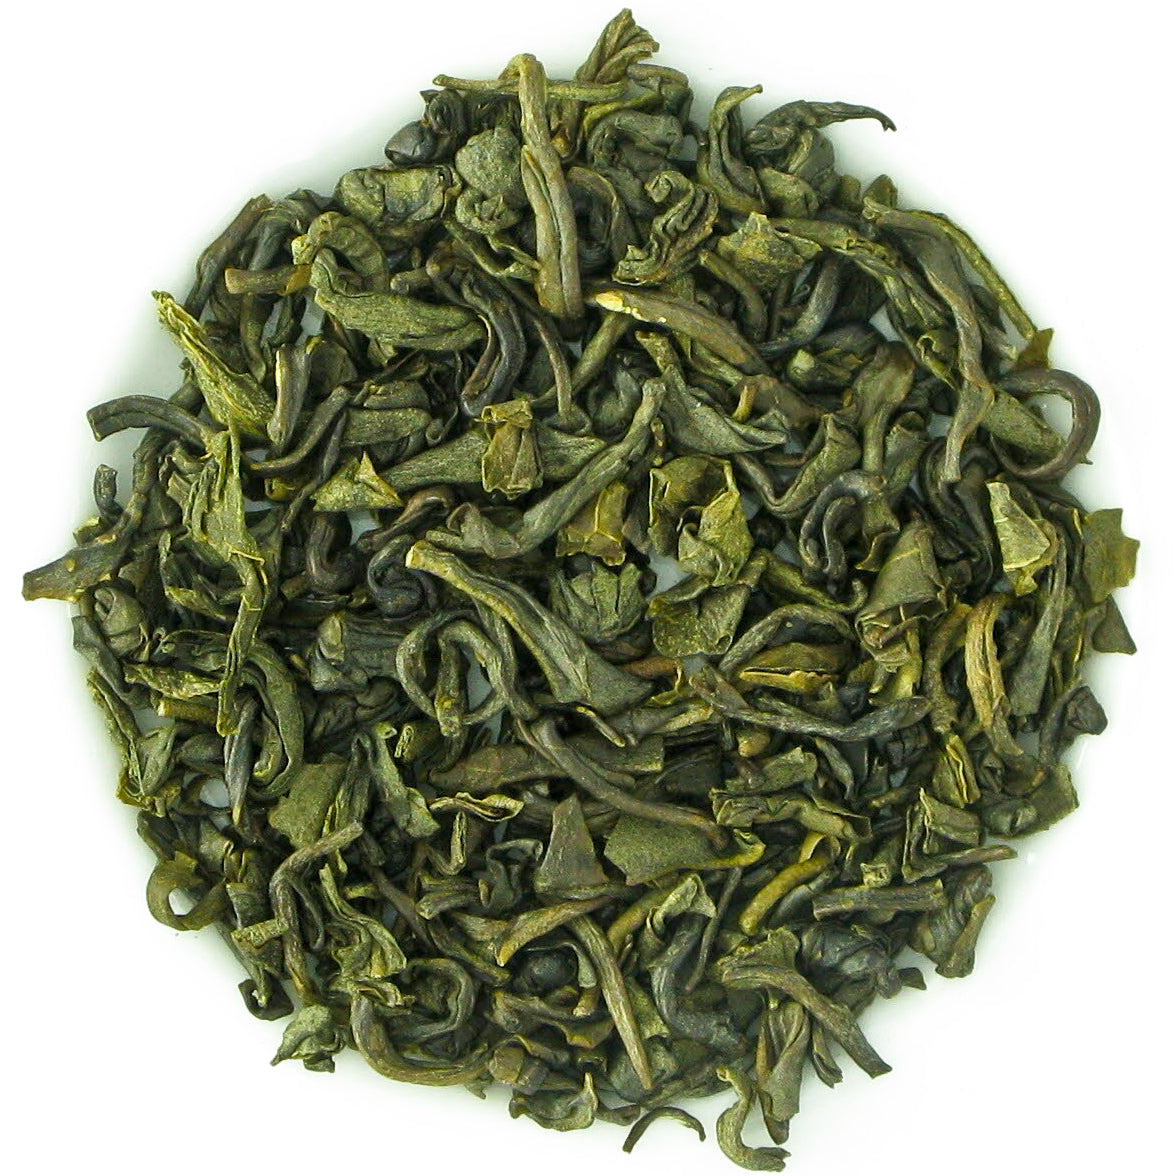 Thé Vert à l'amande    - Kusmi Tea - Thé et infusion - 